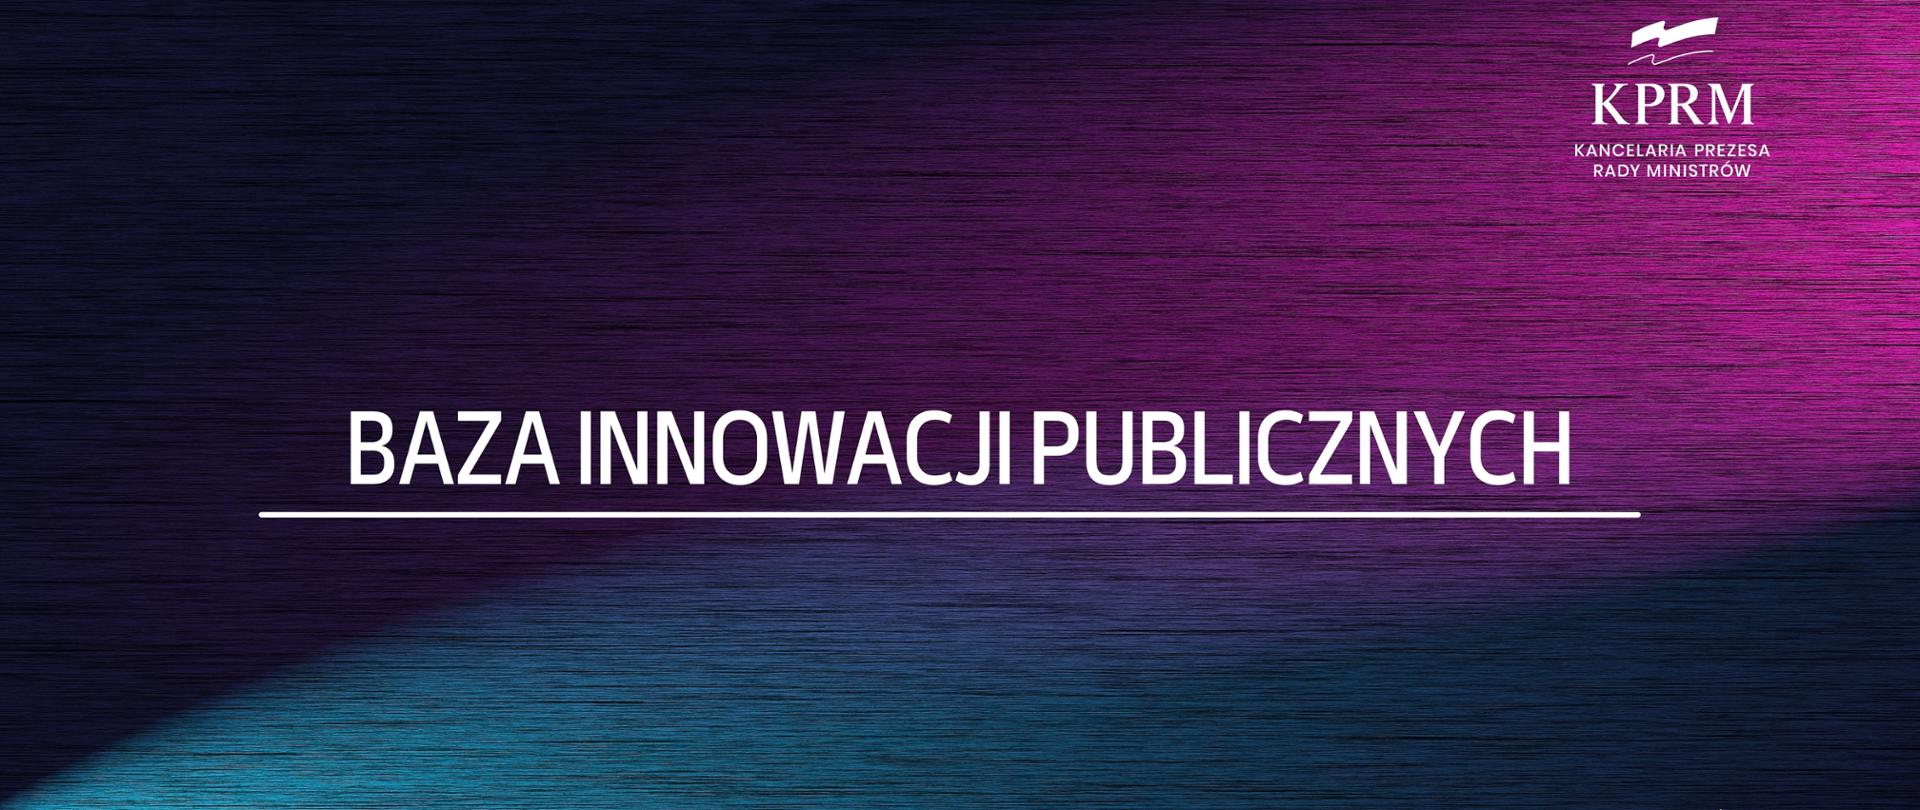 Baza innowacji publicznych